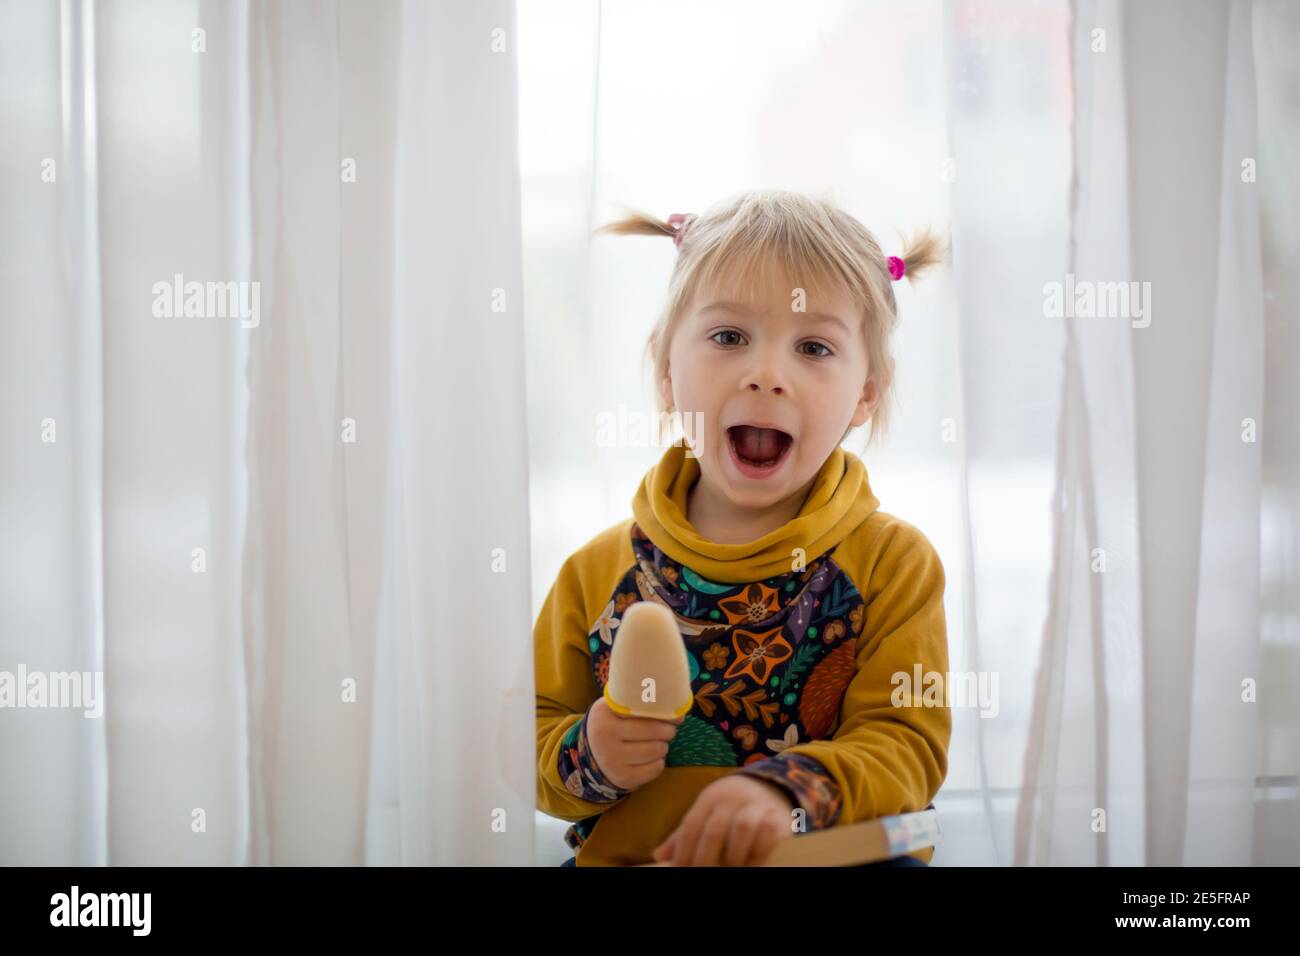 Niedliches süßes Kind, Kleinkind mit kleinen Pferdeschwänzen, zu Hause goofying, Eis essen, lustige Gesichter machen und lächeln Stockfoto